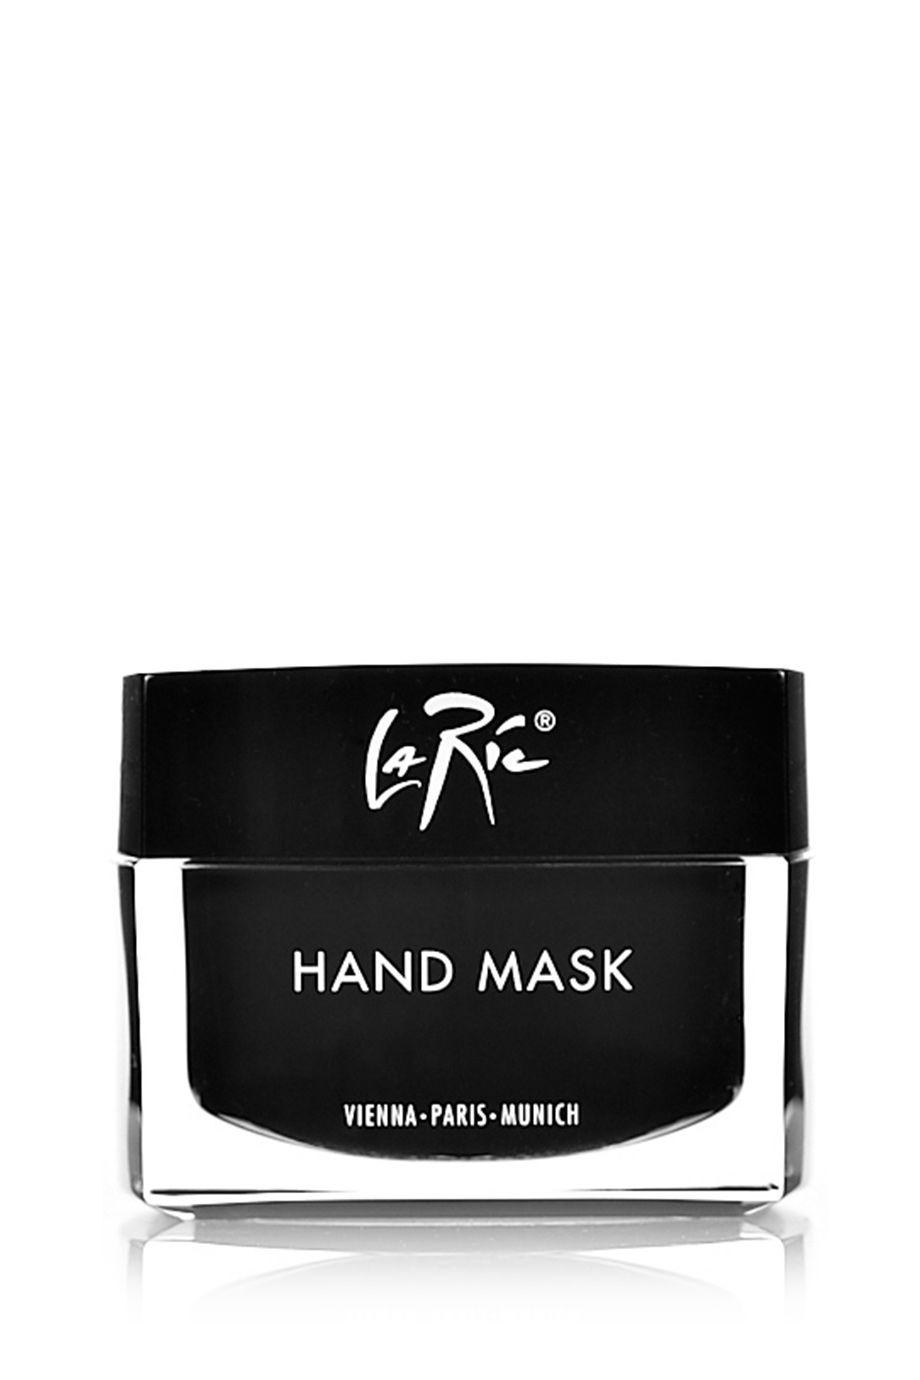 La Ric Hand Mask 50 ml.